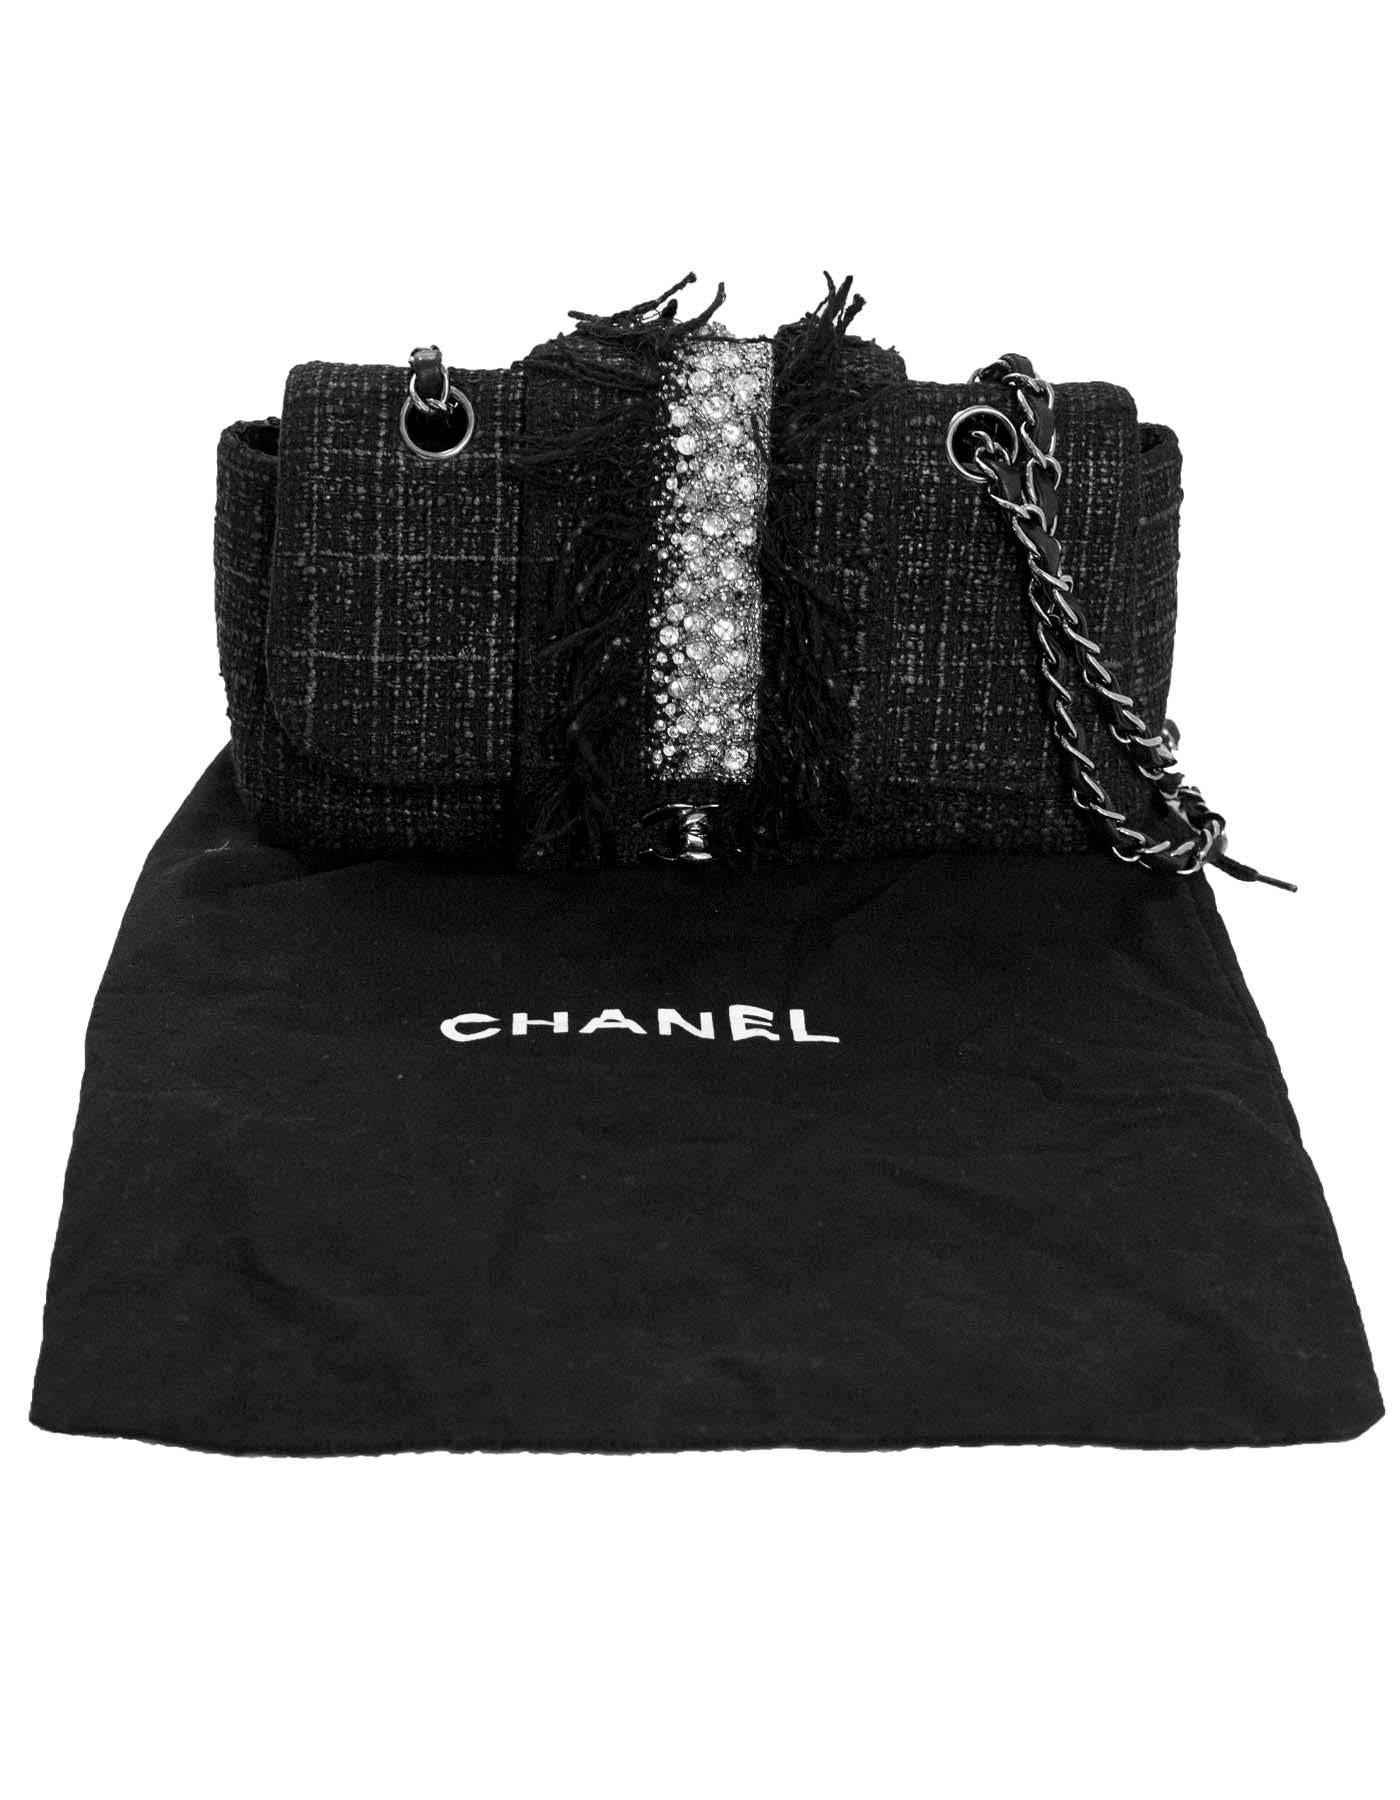 Chanel 2005 Black Tweed & Swarovski Crystal Fringe Flap Bag rt. $4, 825 3